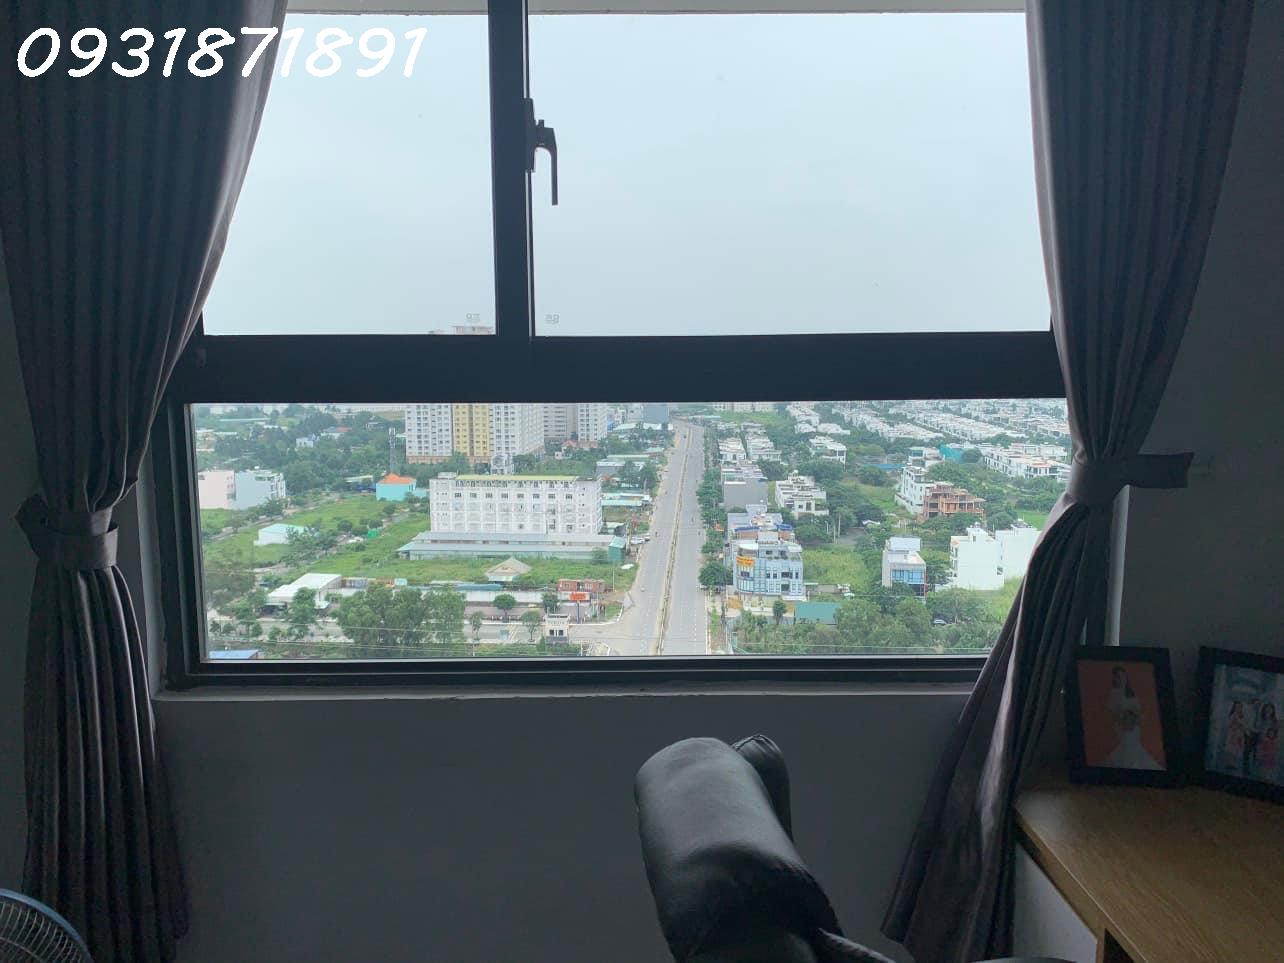 Bán Gấp Penthouses 130m2 - Dự án sky 9, Phú Hữu, gần khu công nghệ cao - Giá 3,2 tỷ bao thuế phí 1